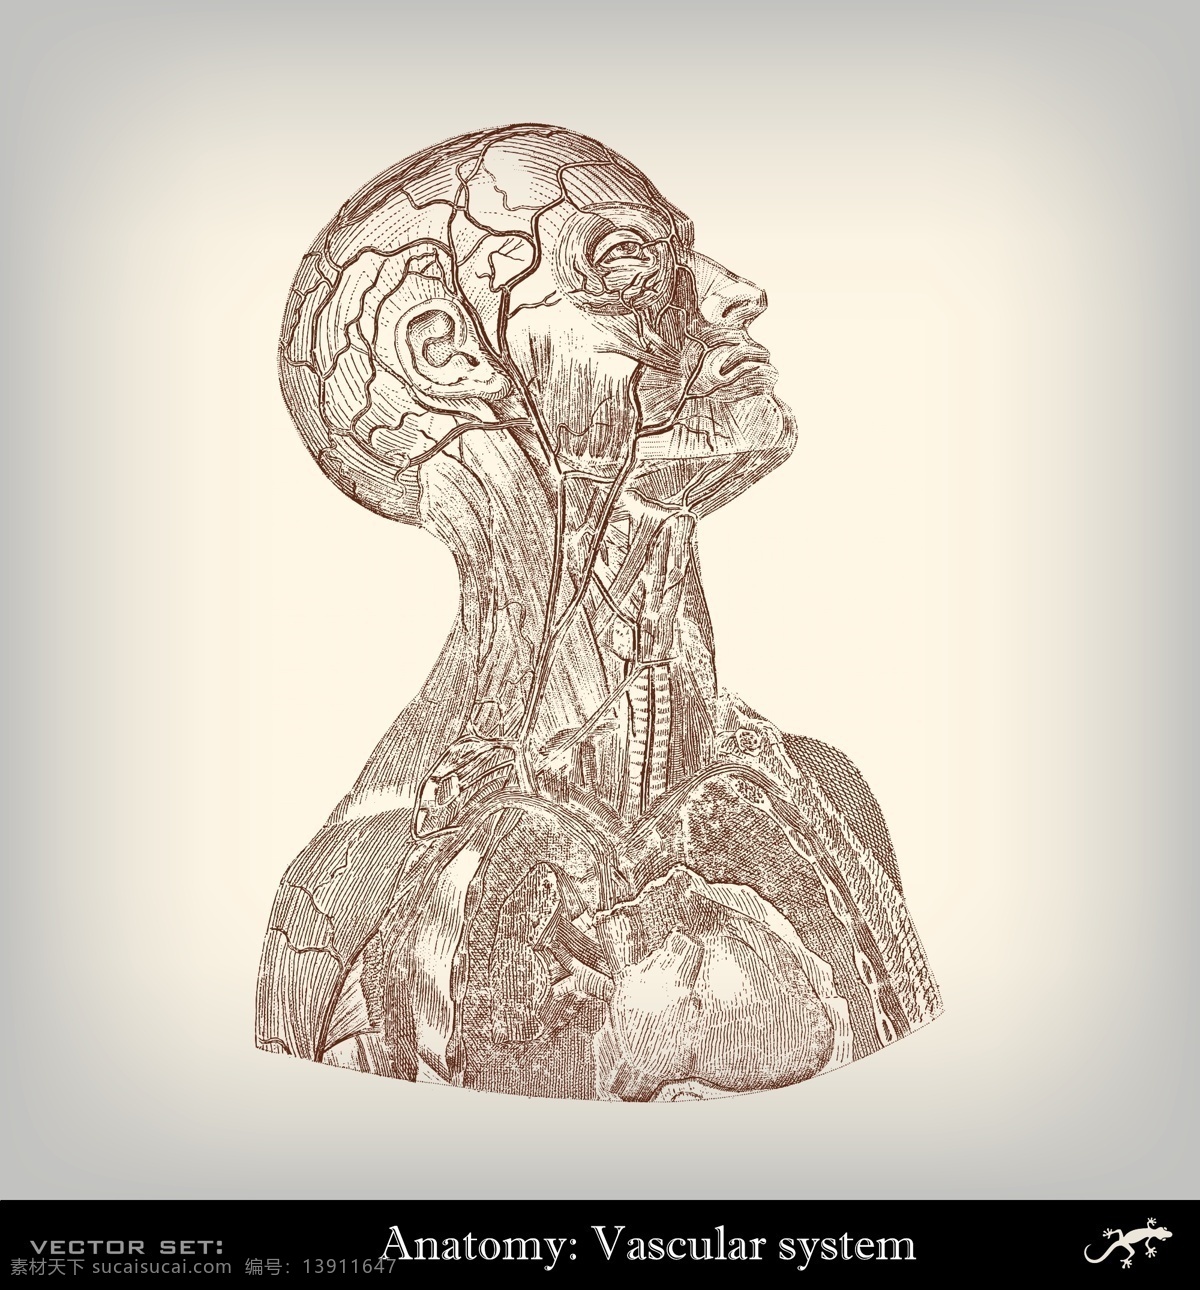 人体 经络 血管 器官 人体经络 肌肉组织 人体器官 人体解剖学 医学插画 其他人物 矢量人物 矢量素材 白色